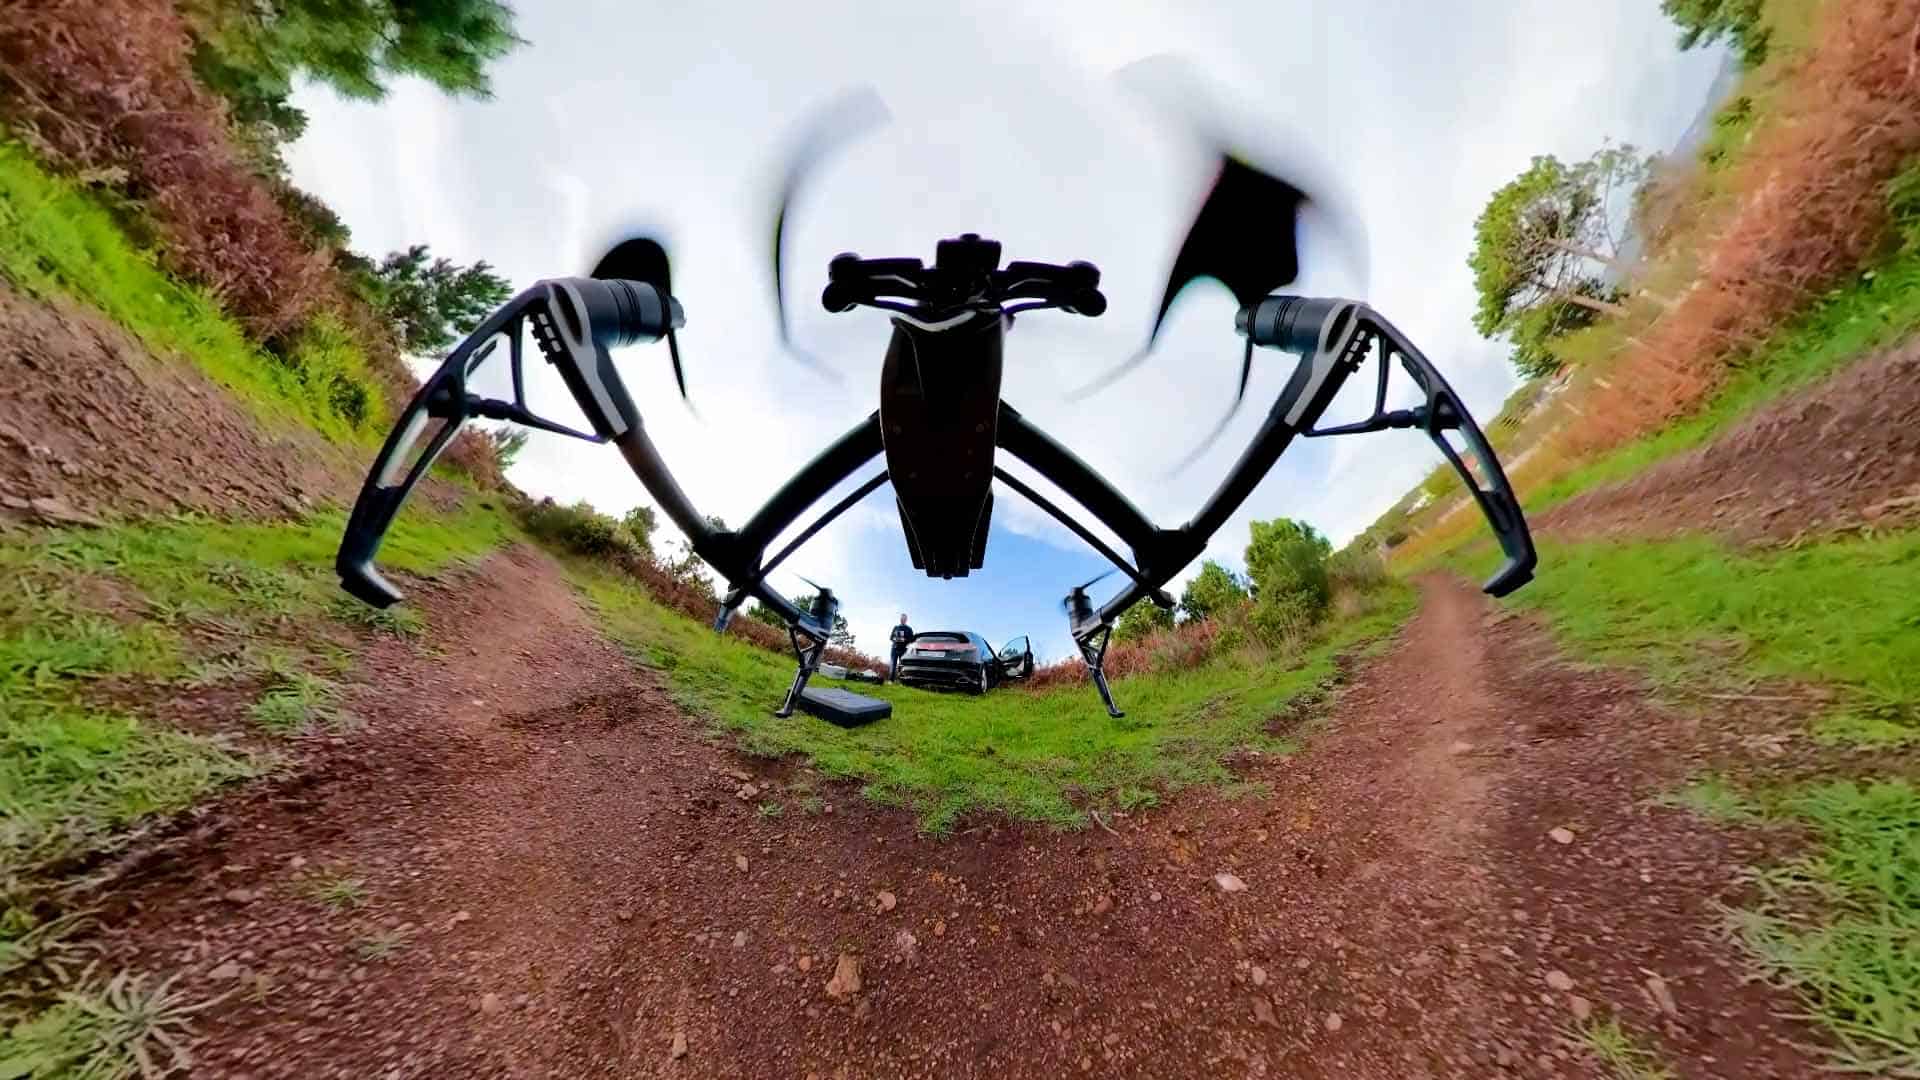 Grabación de vídeo 360 con drone. Plano ultrangular del RPA Inspire 2 x5s portando una cámara 360º